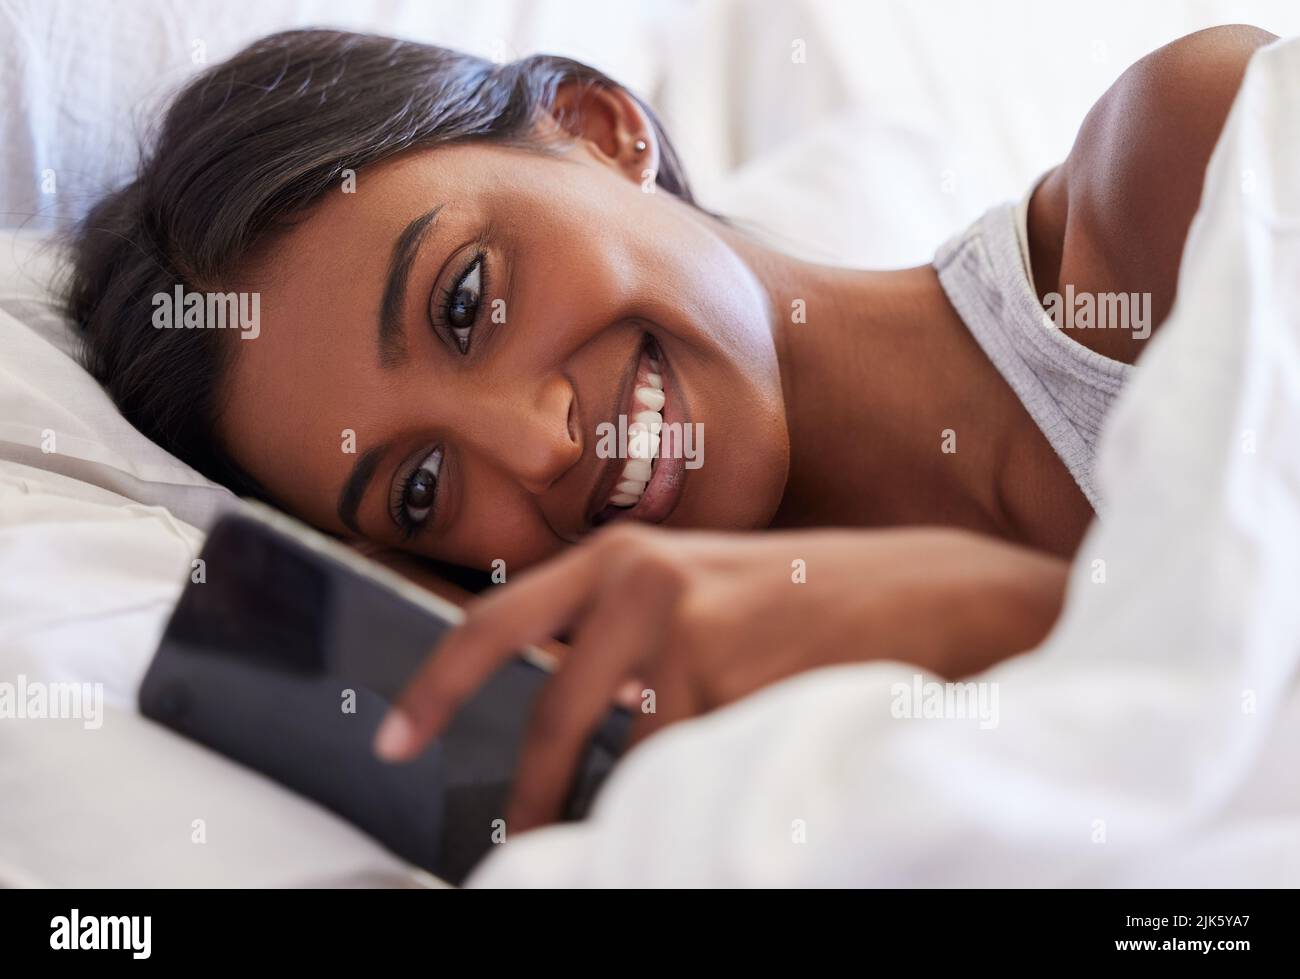 Eso me hizo sonreír. Una joven usando su celular mientras estaba acostada en su cama. Foto de stock